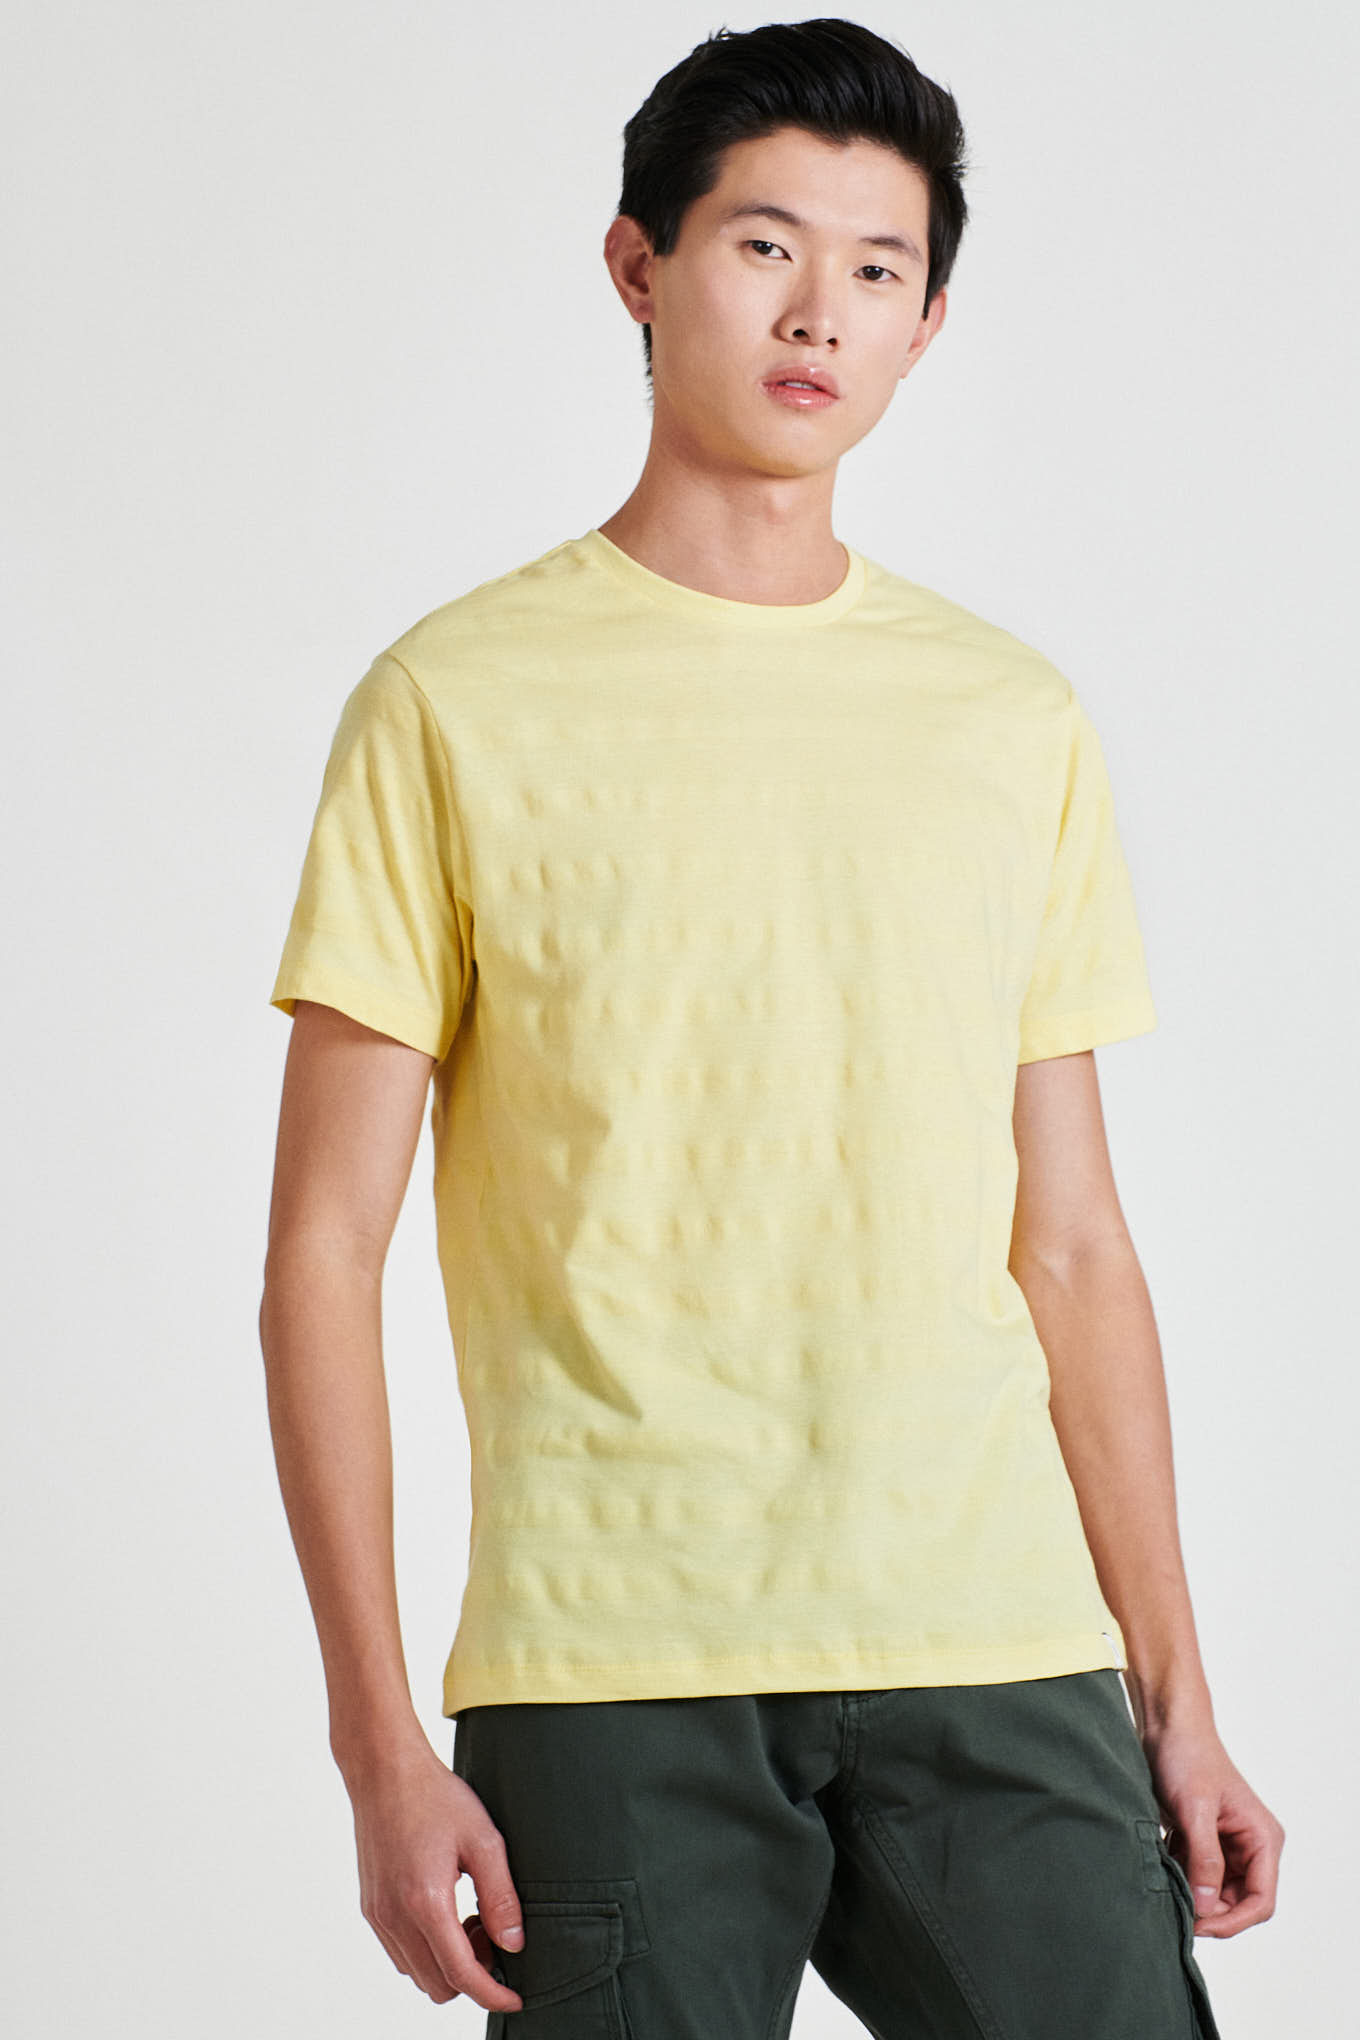 T-Shirt Amarelo Claro Casual Homem